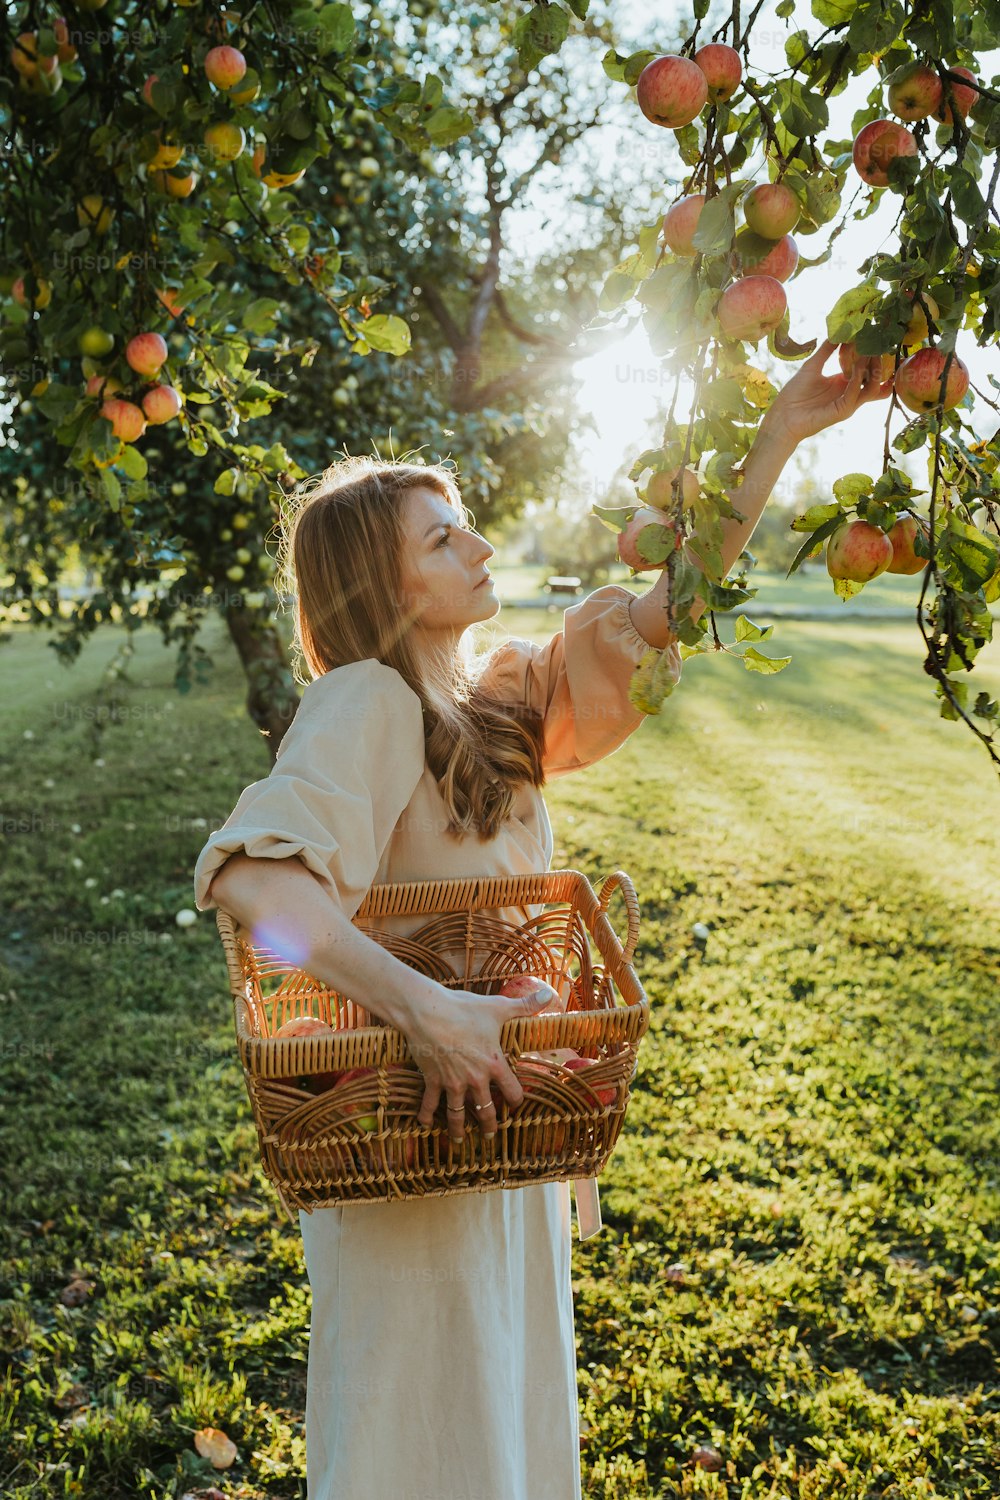 Una donna sta raccogliendo mele da un albero